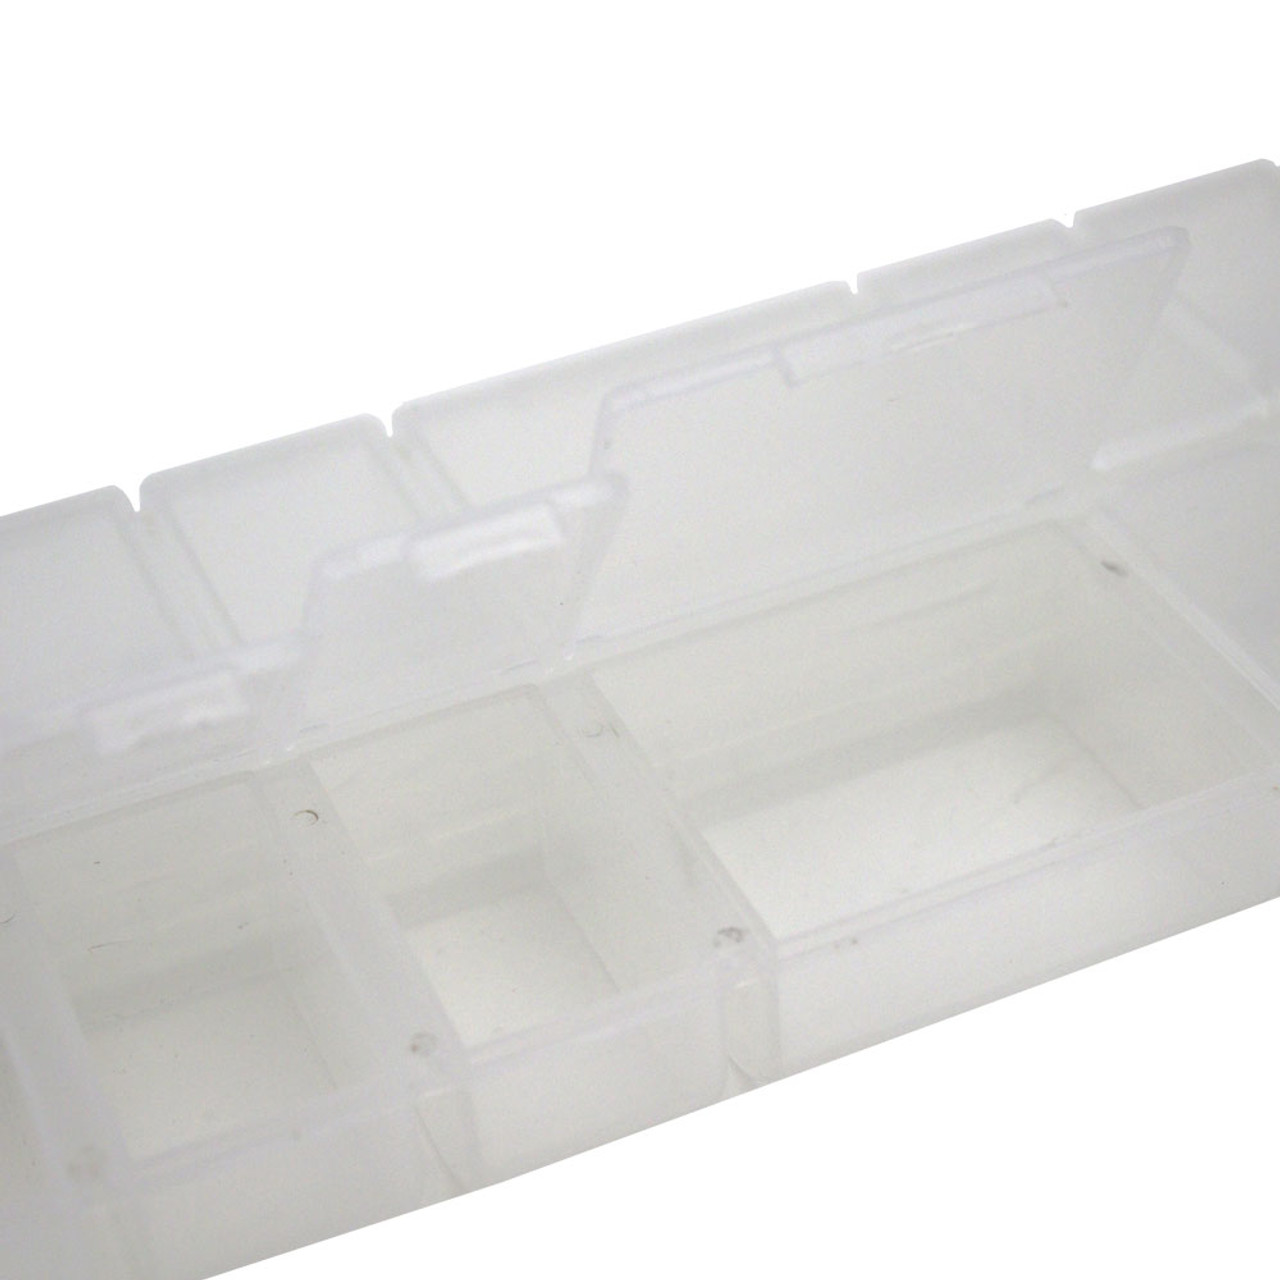 14 Compartment Plastic Organizer Box